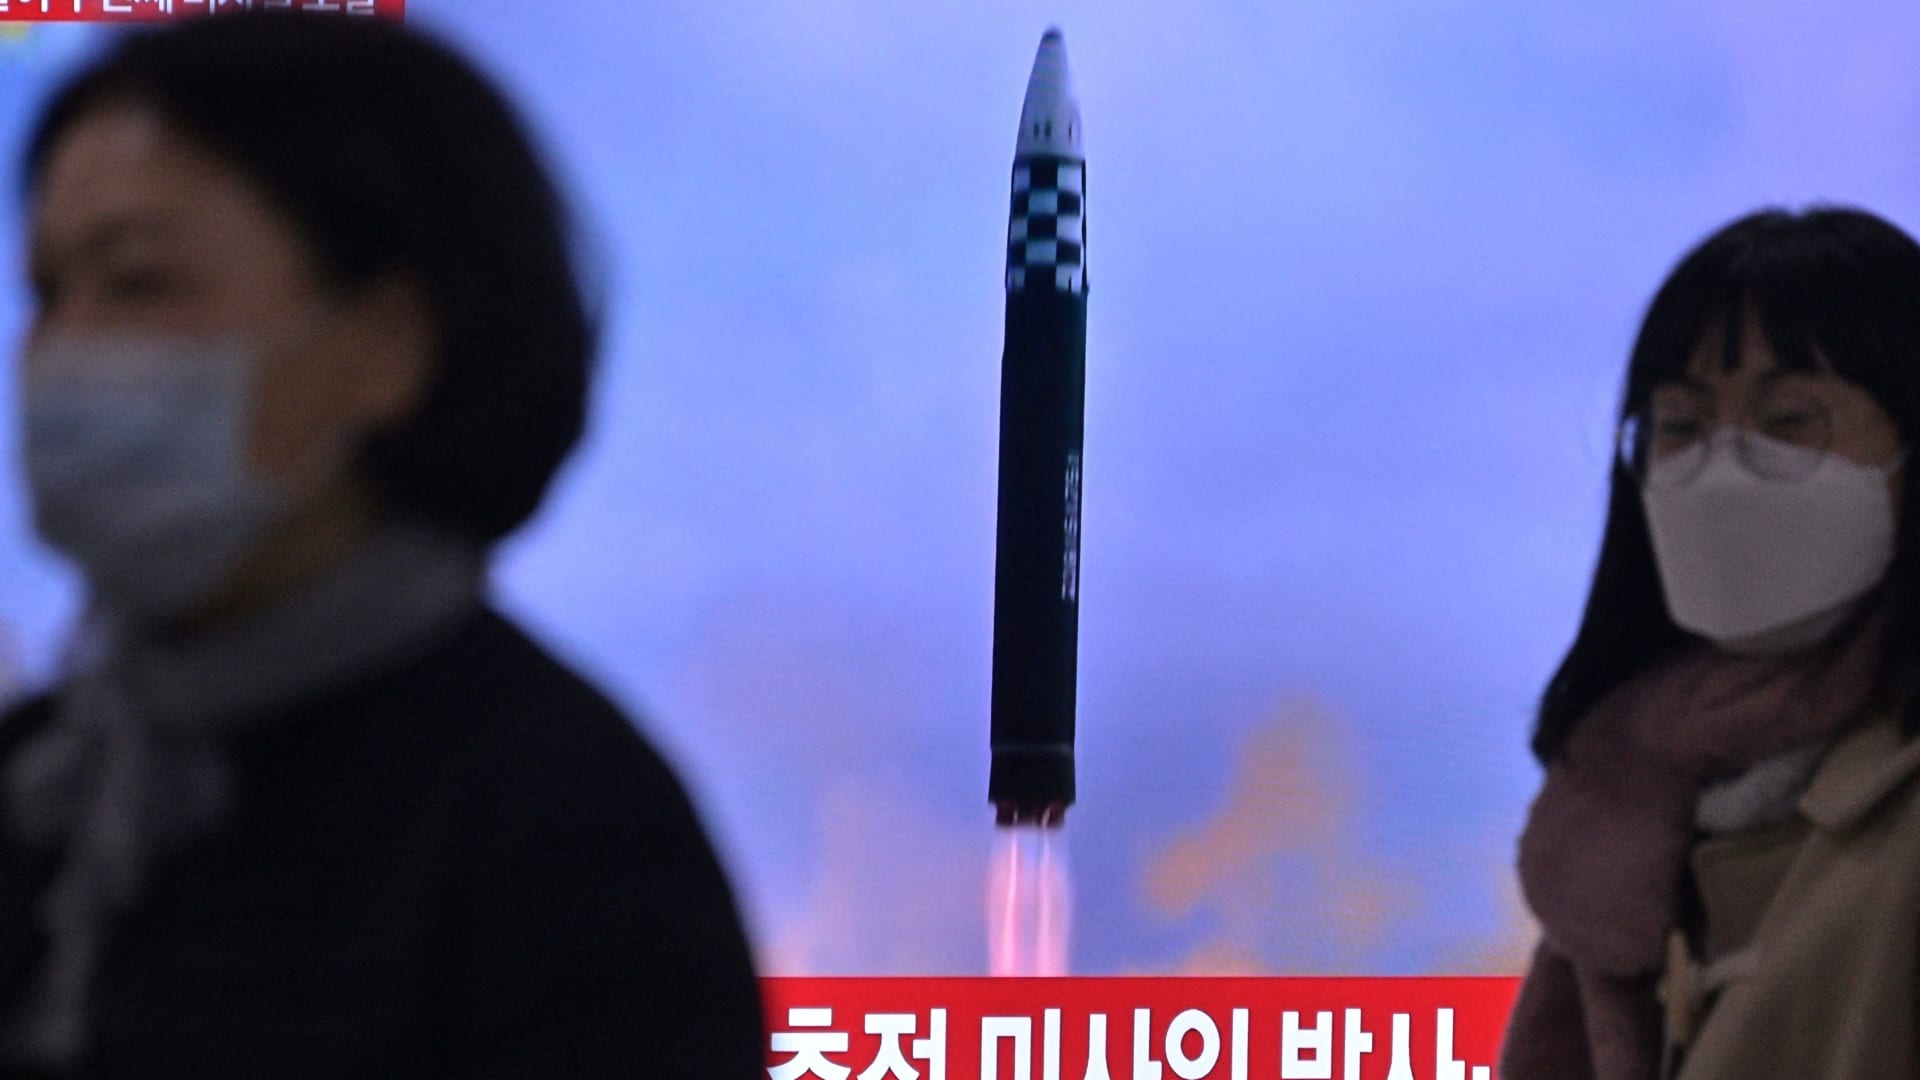 شاهد لحظة إطلاق كوريا الشمالية صاروخًا بالستيًا